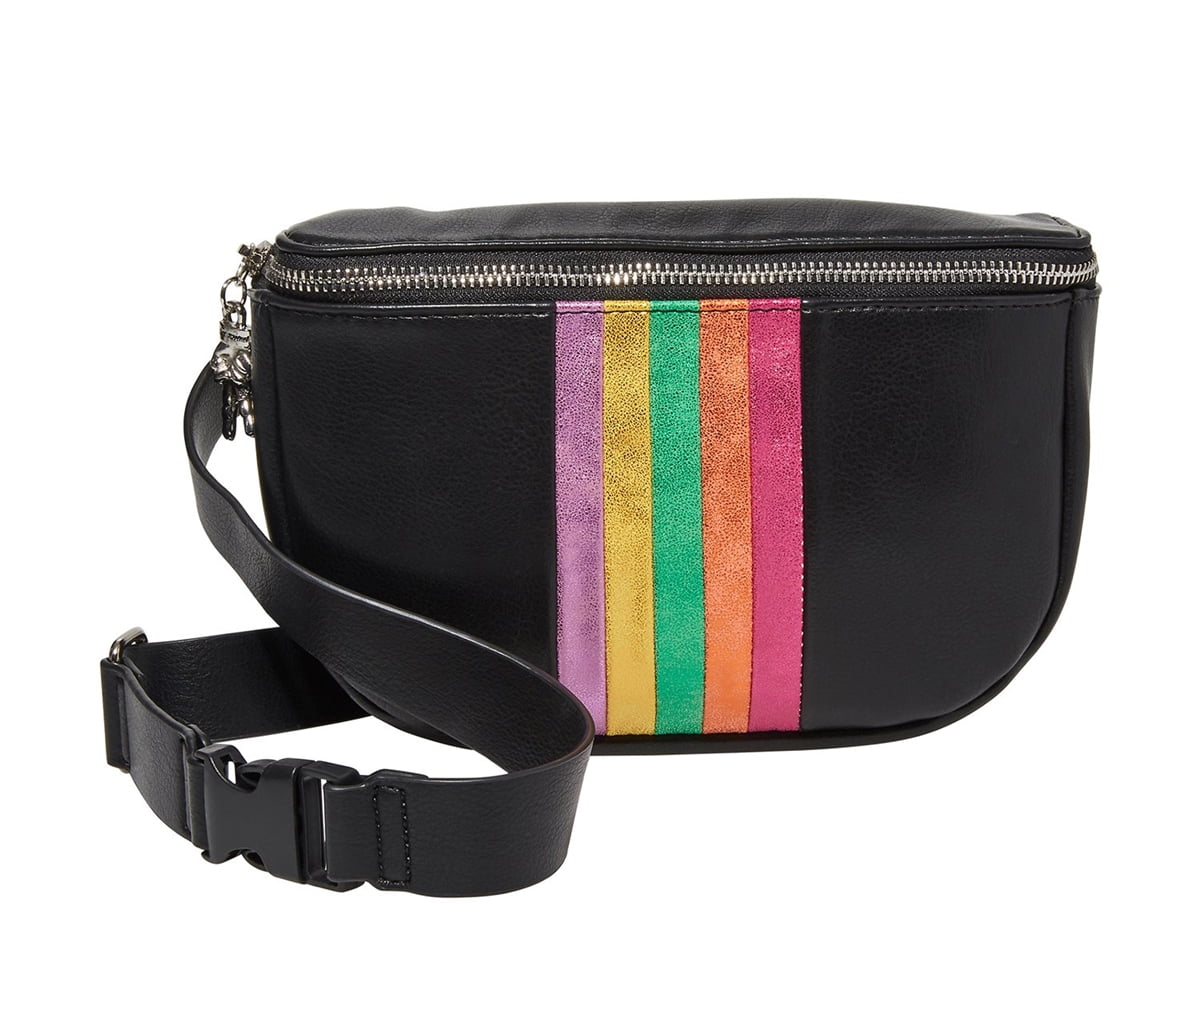 Clare V. Leather Belt Bag in Black